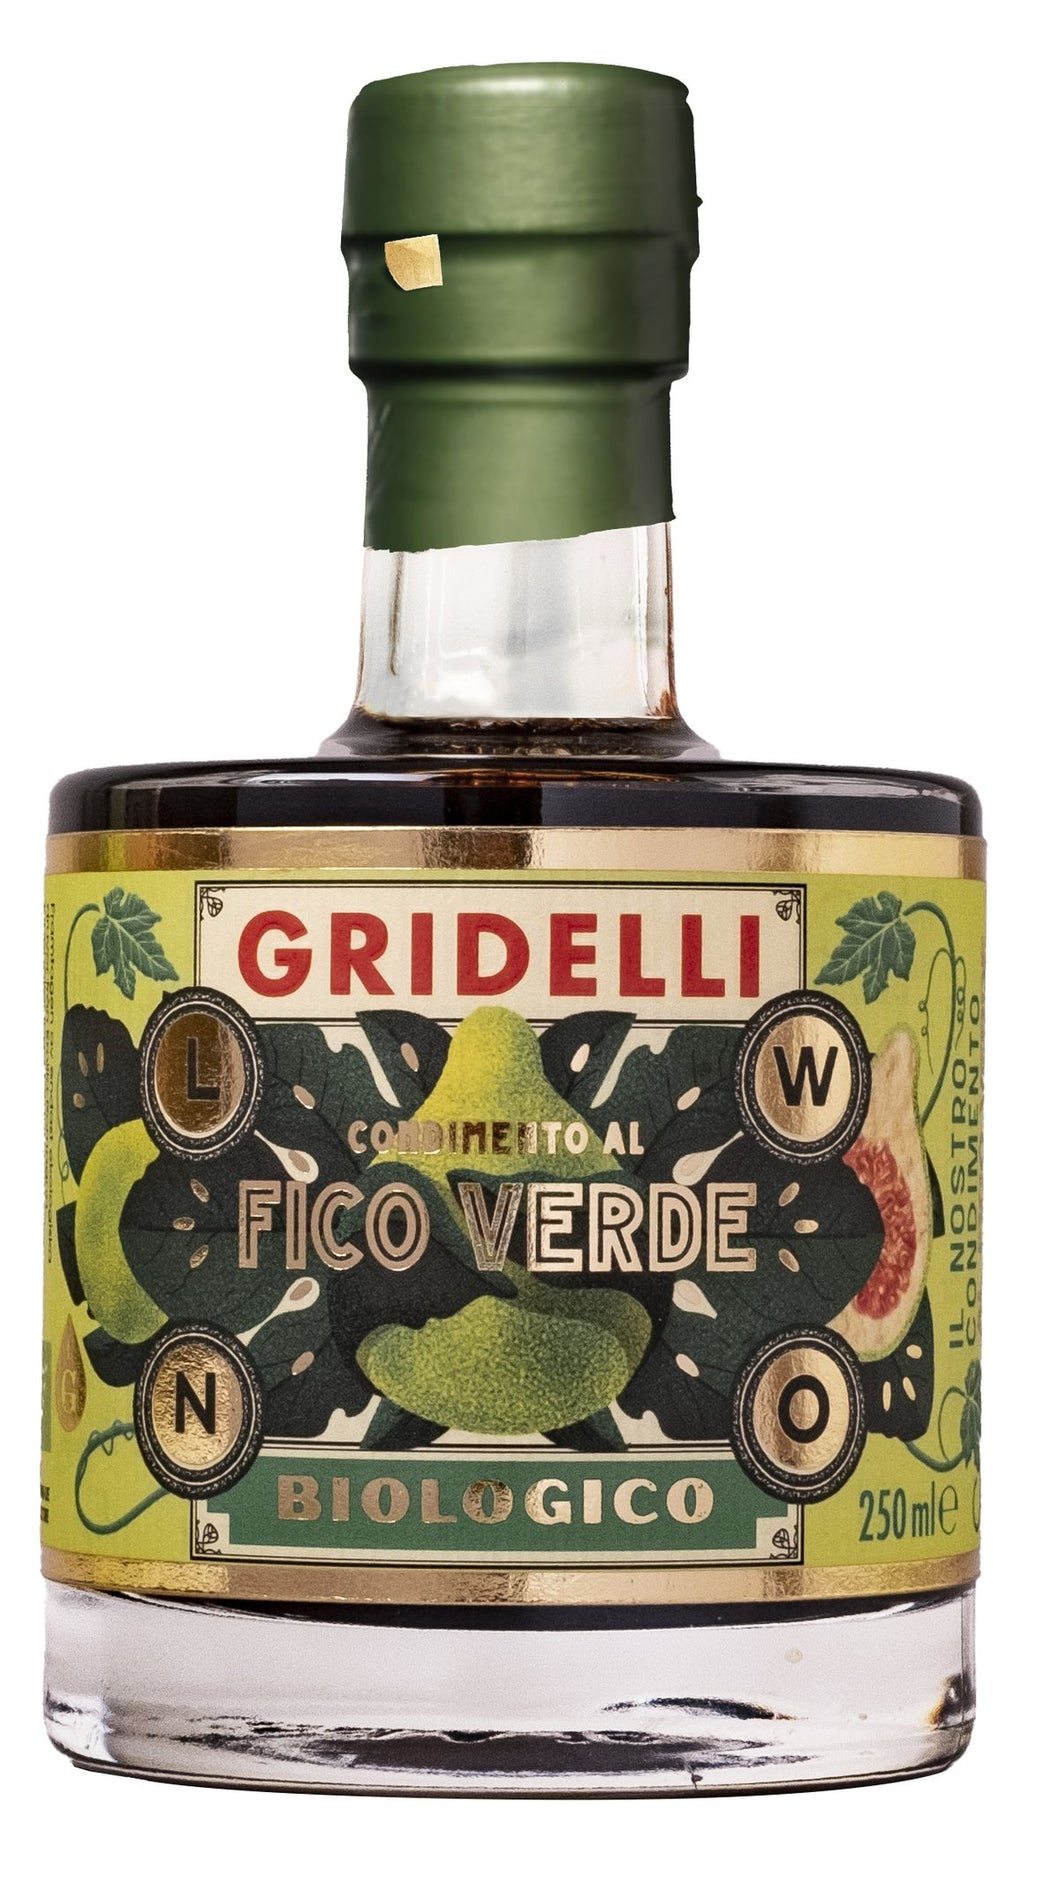 Gridelli's Aceto Balsamico Fico verde